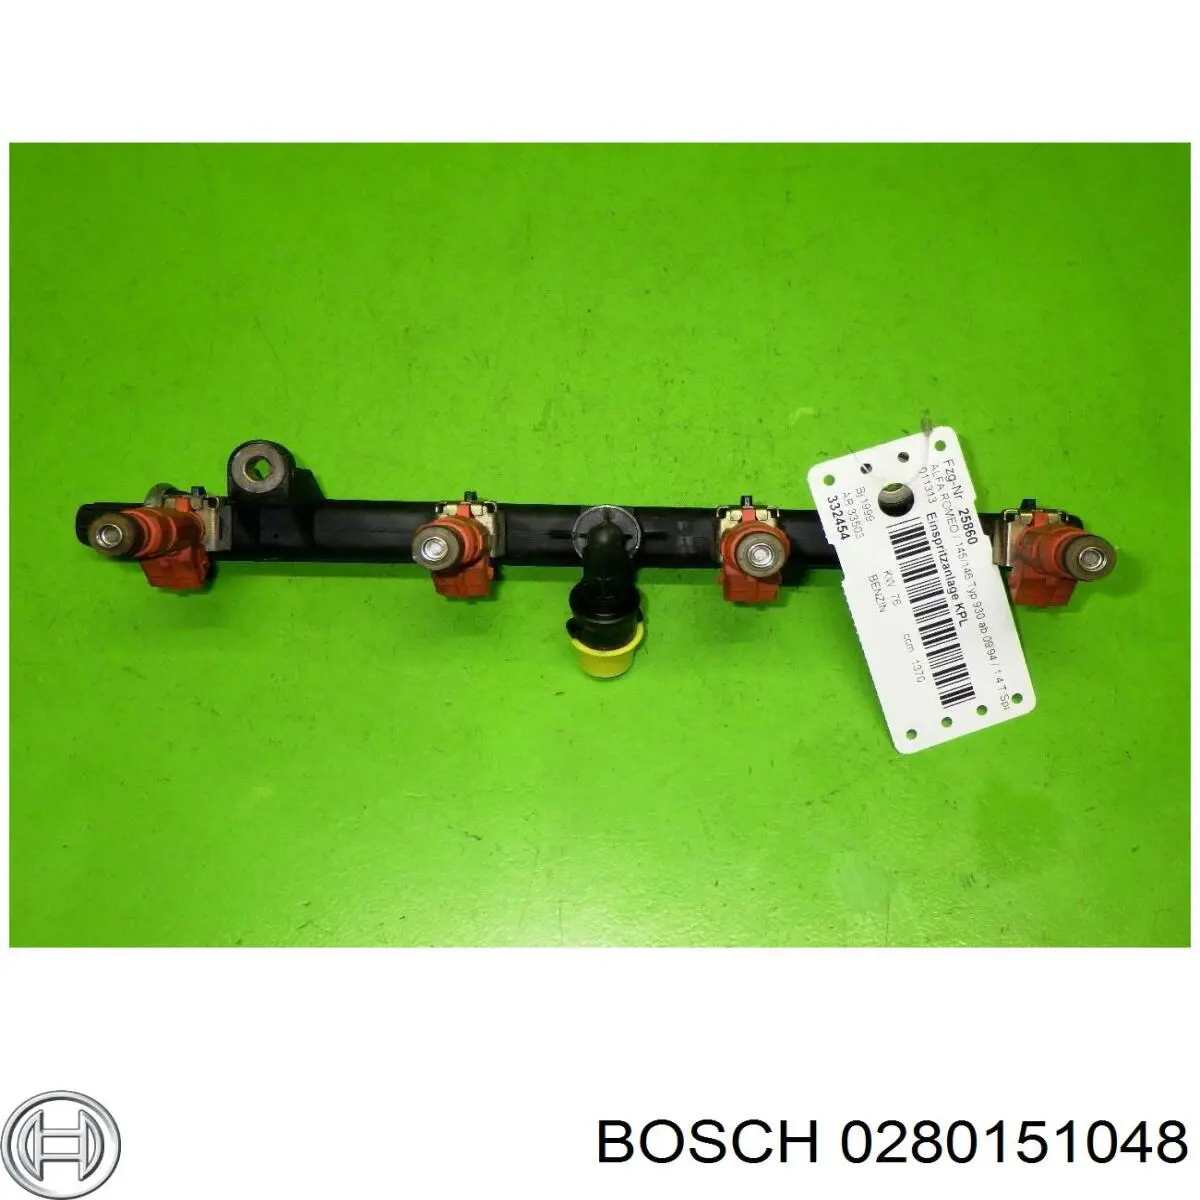 0280151048 Bosch rampa de inyectores